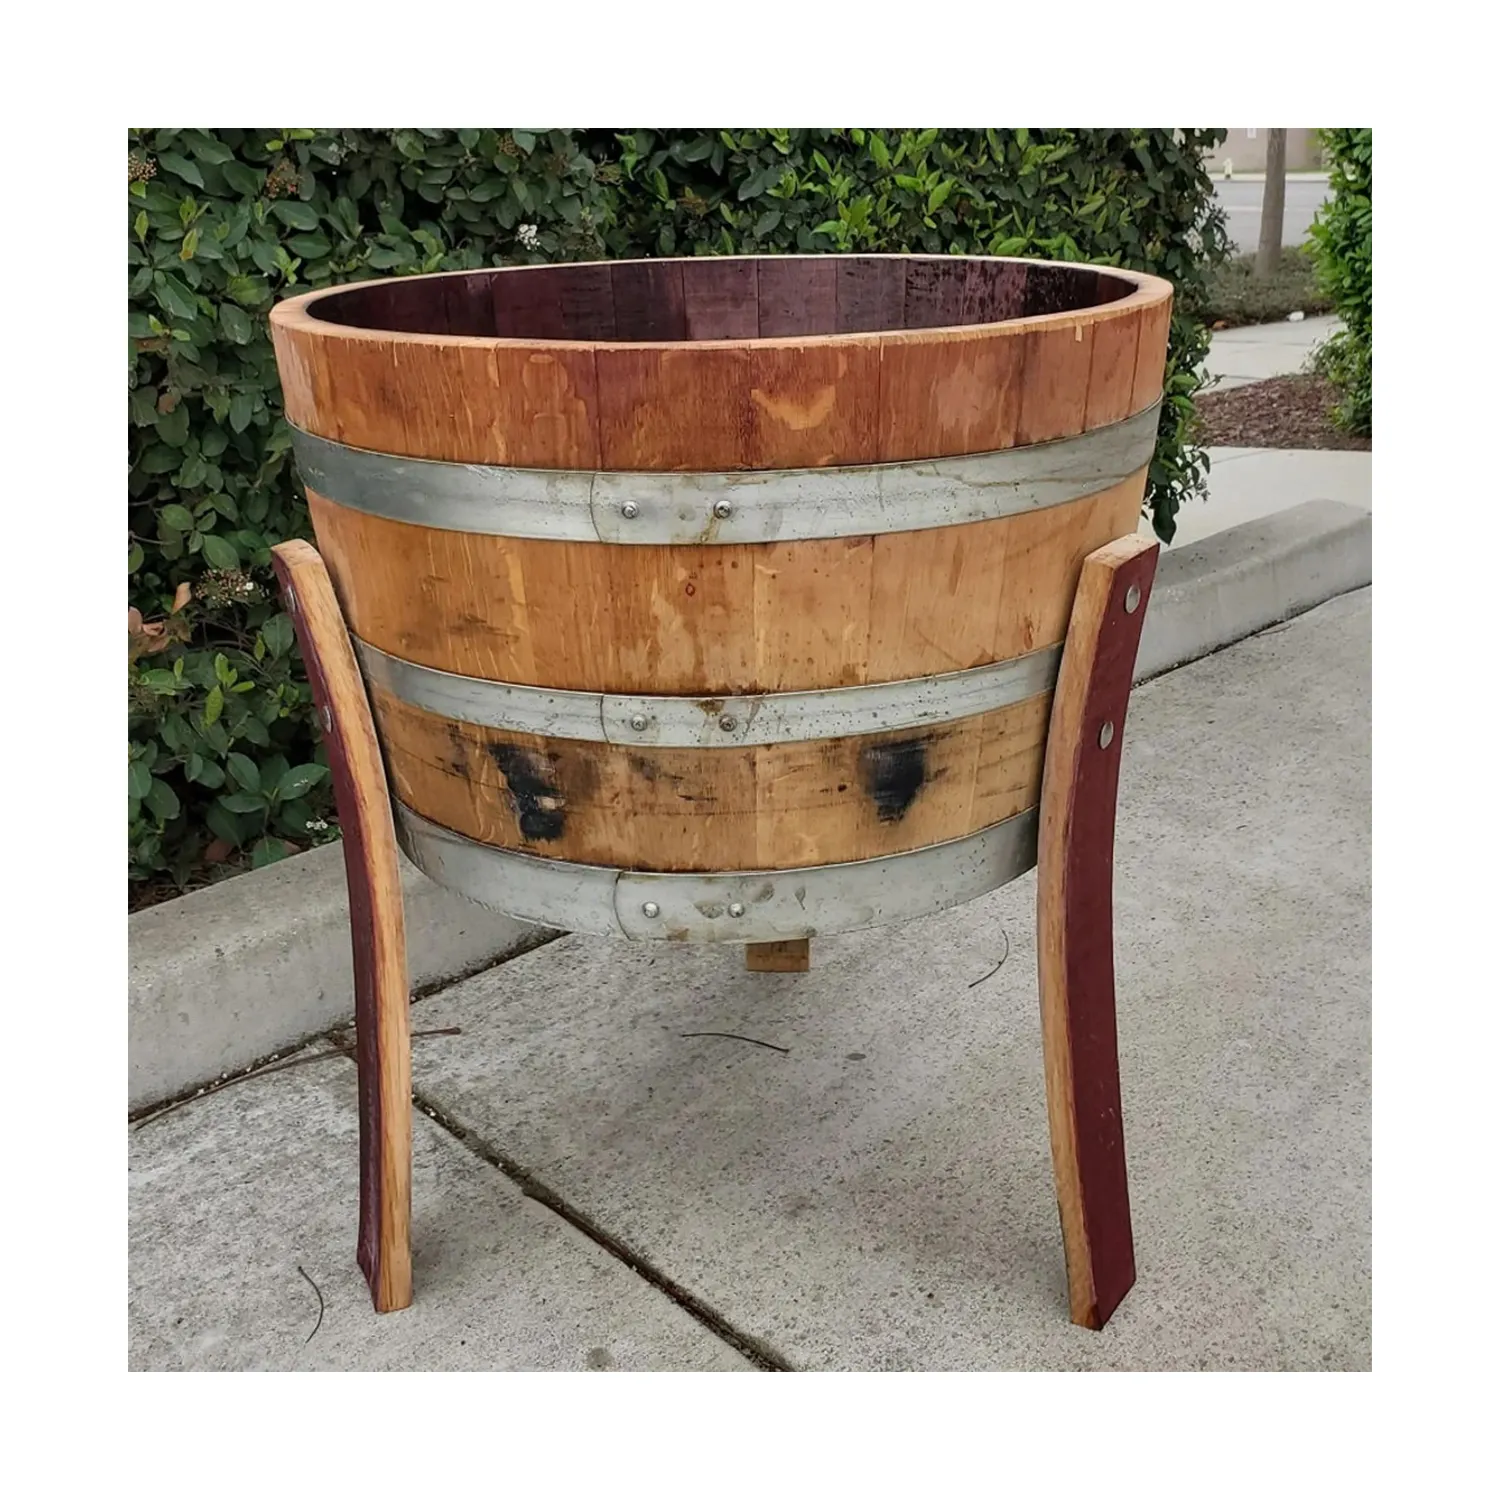 Handgefertigte halbfass Weinfasseln Pflanzer mit Beinen | großer runder Holzblumentopf für draußen | 1/2 Holzfass Gartenspülen